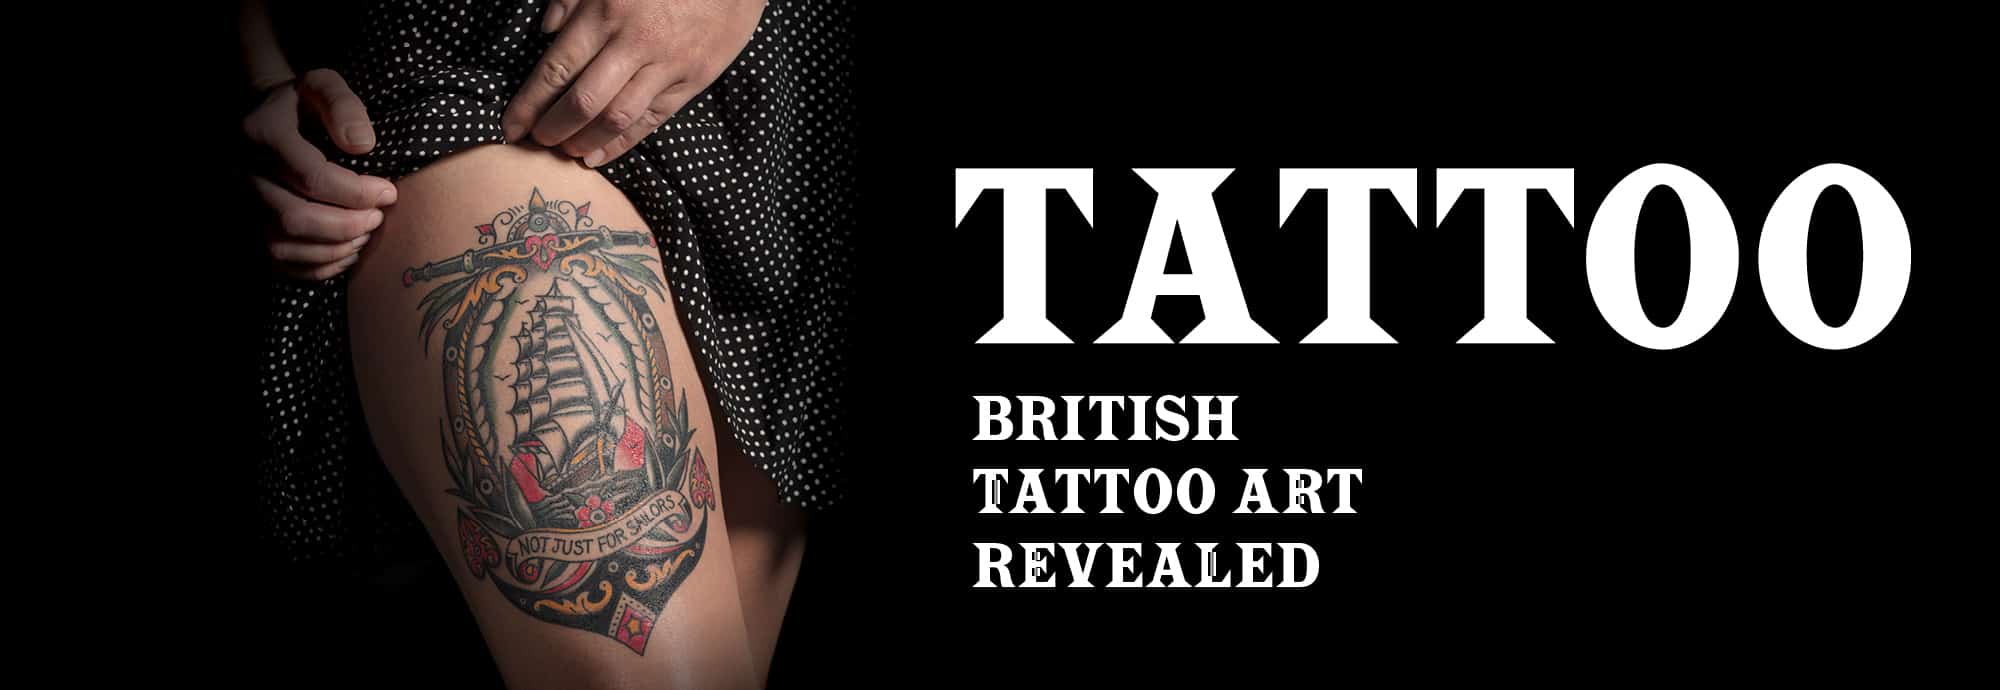 Tattoo: British Tattoo Art Revealed | National Maritime Museum Cornwall